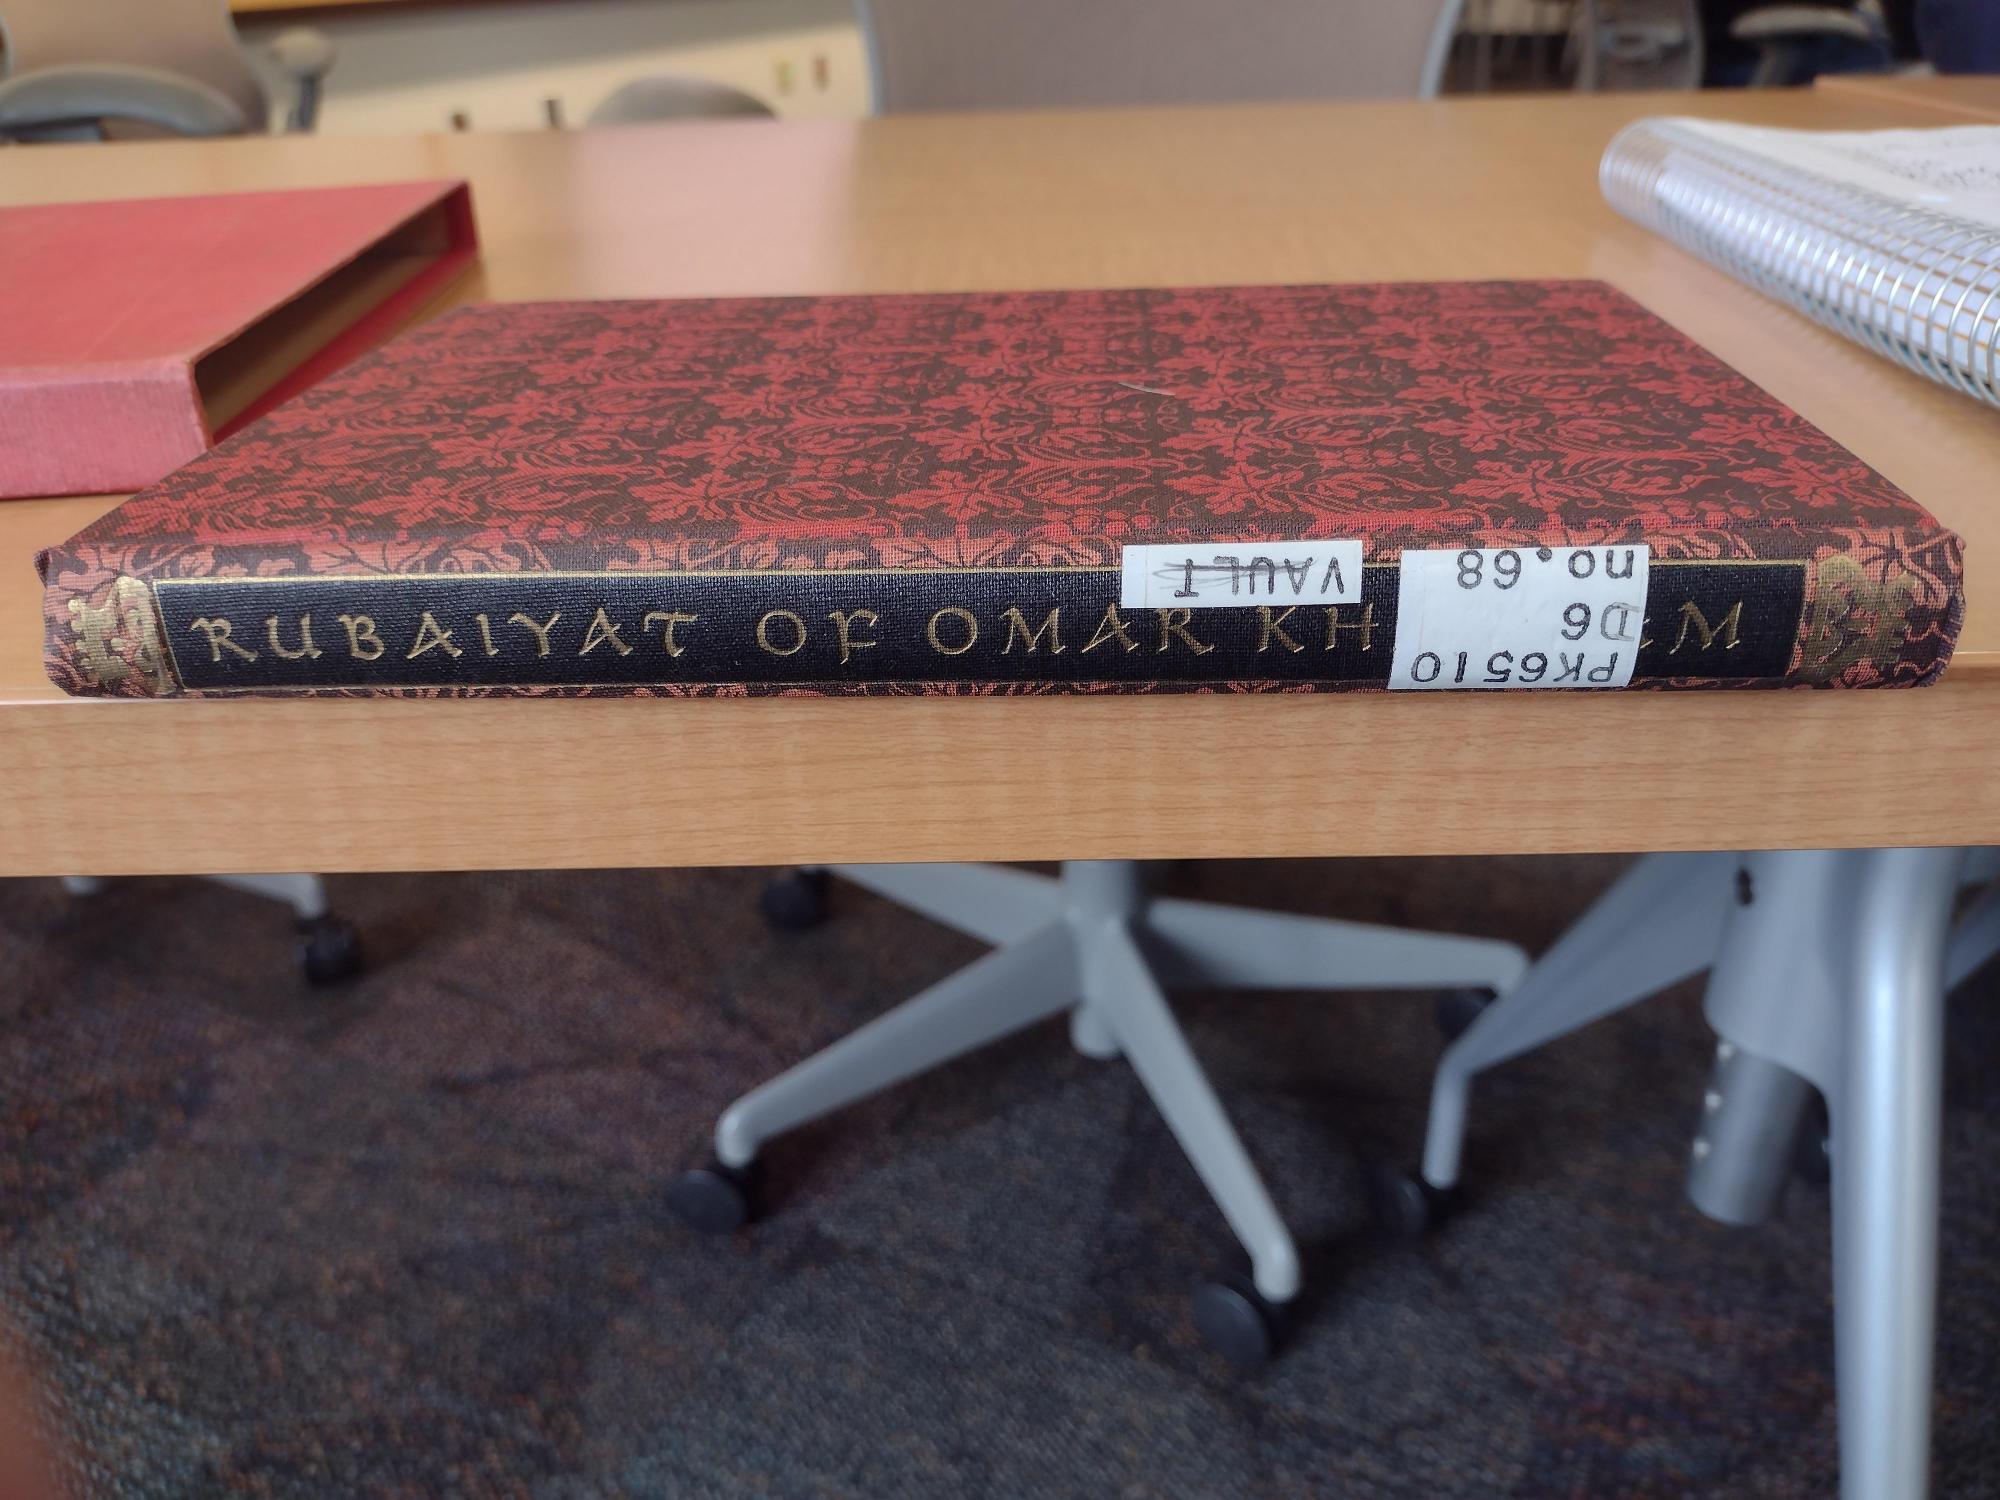 Spine of the Rubaiyat of Omar Khayyam